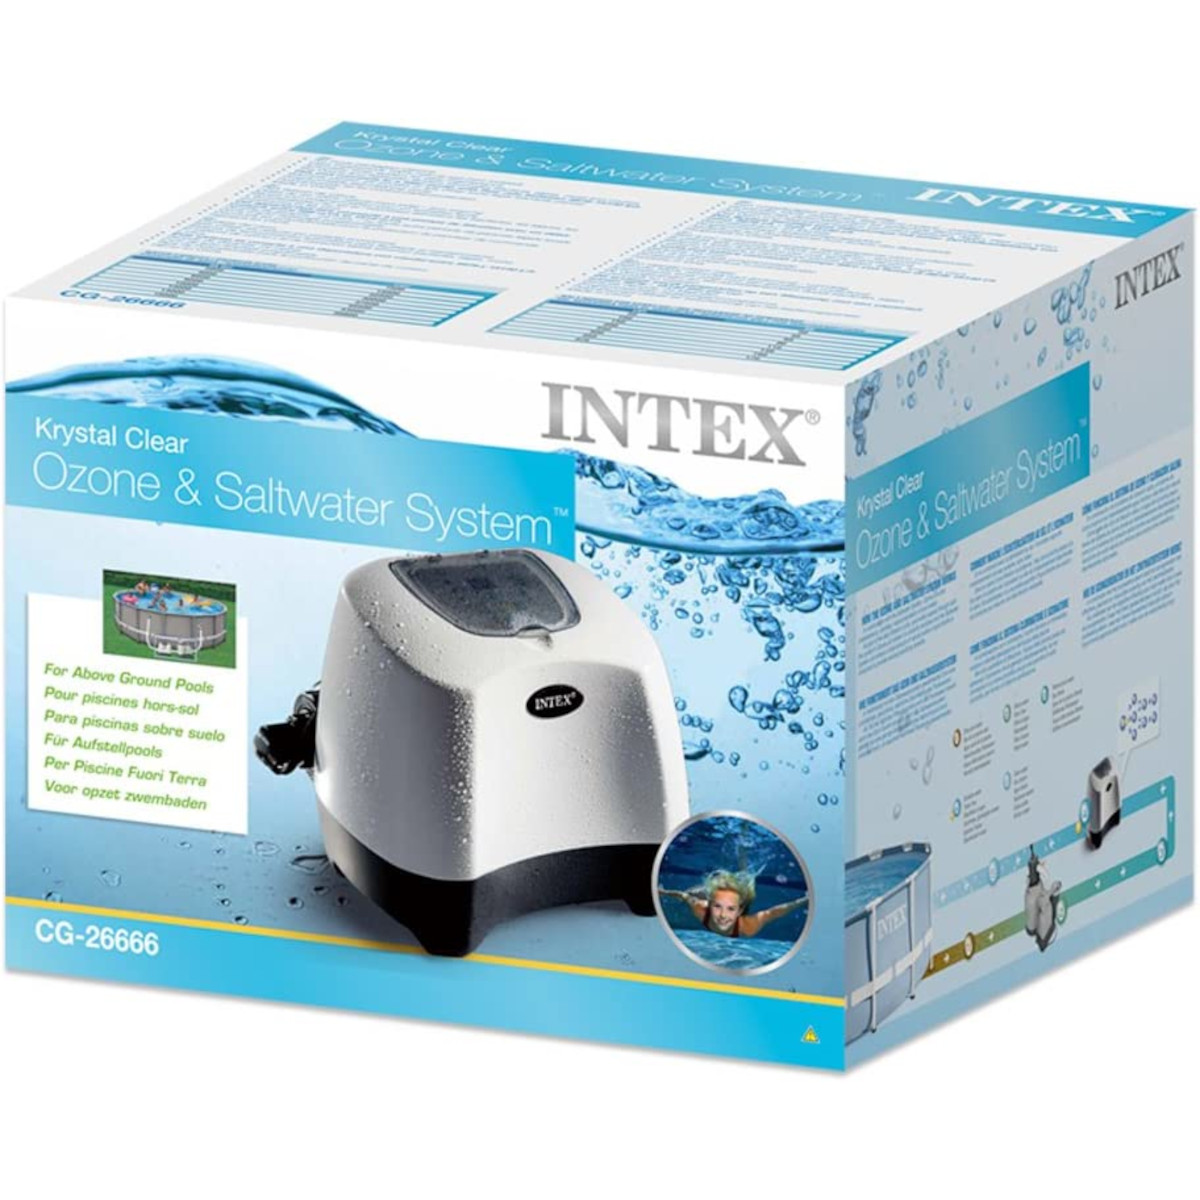 INTEX 26666 - Salzwasser-System mehrfarbig und Ozon- Poolreinigung, - QZ1100